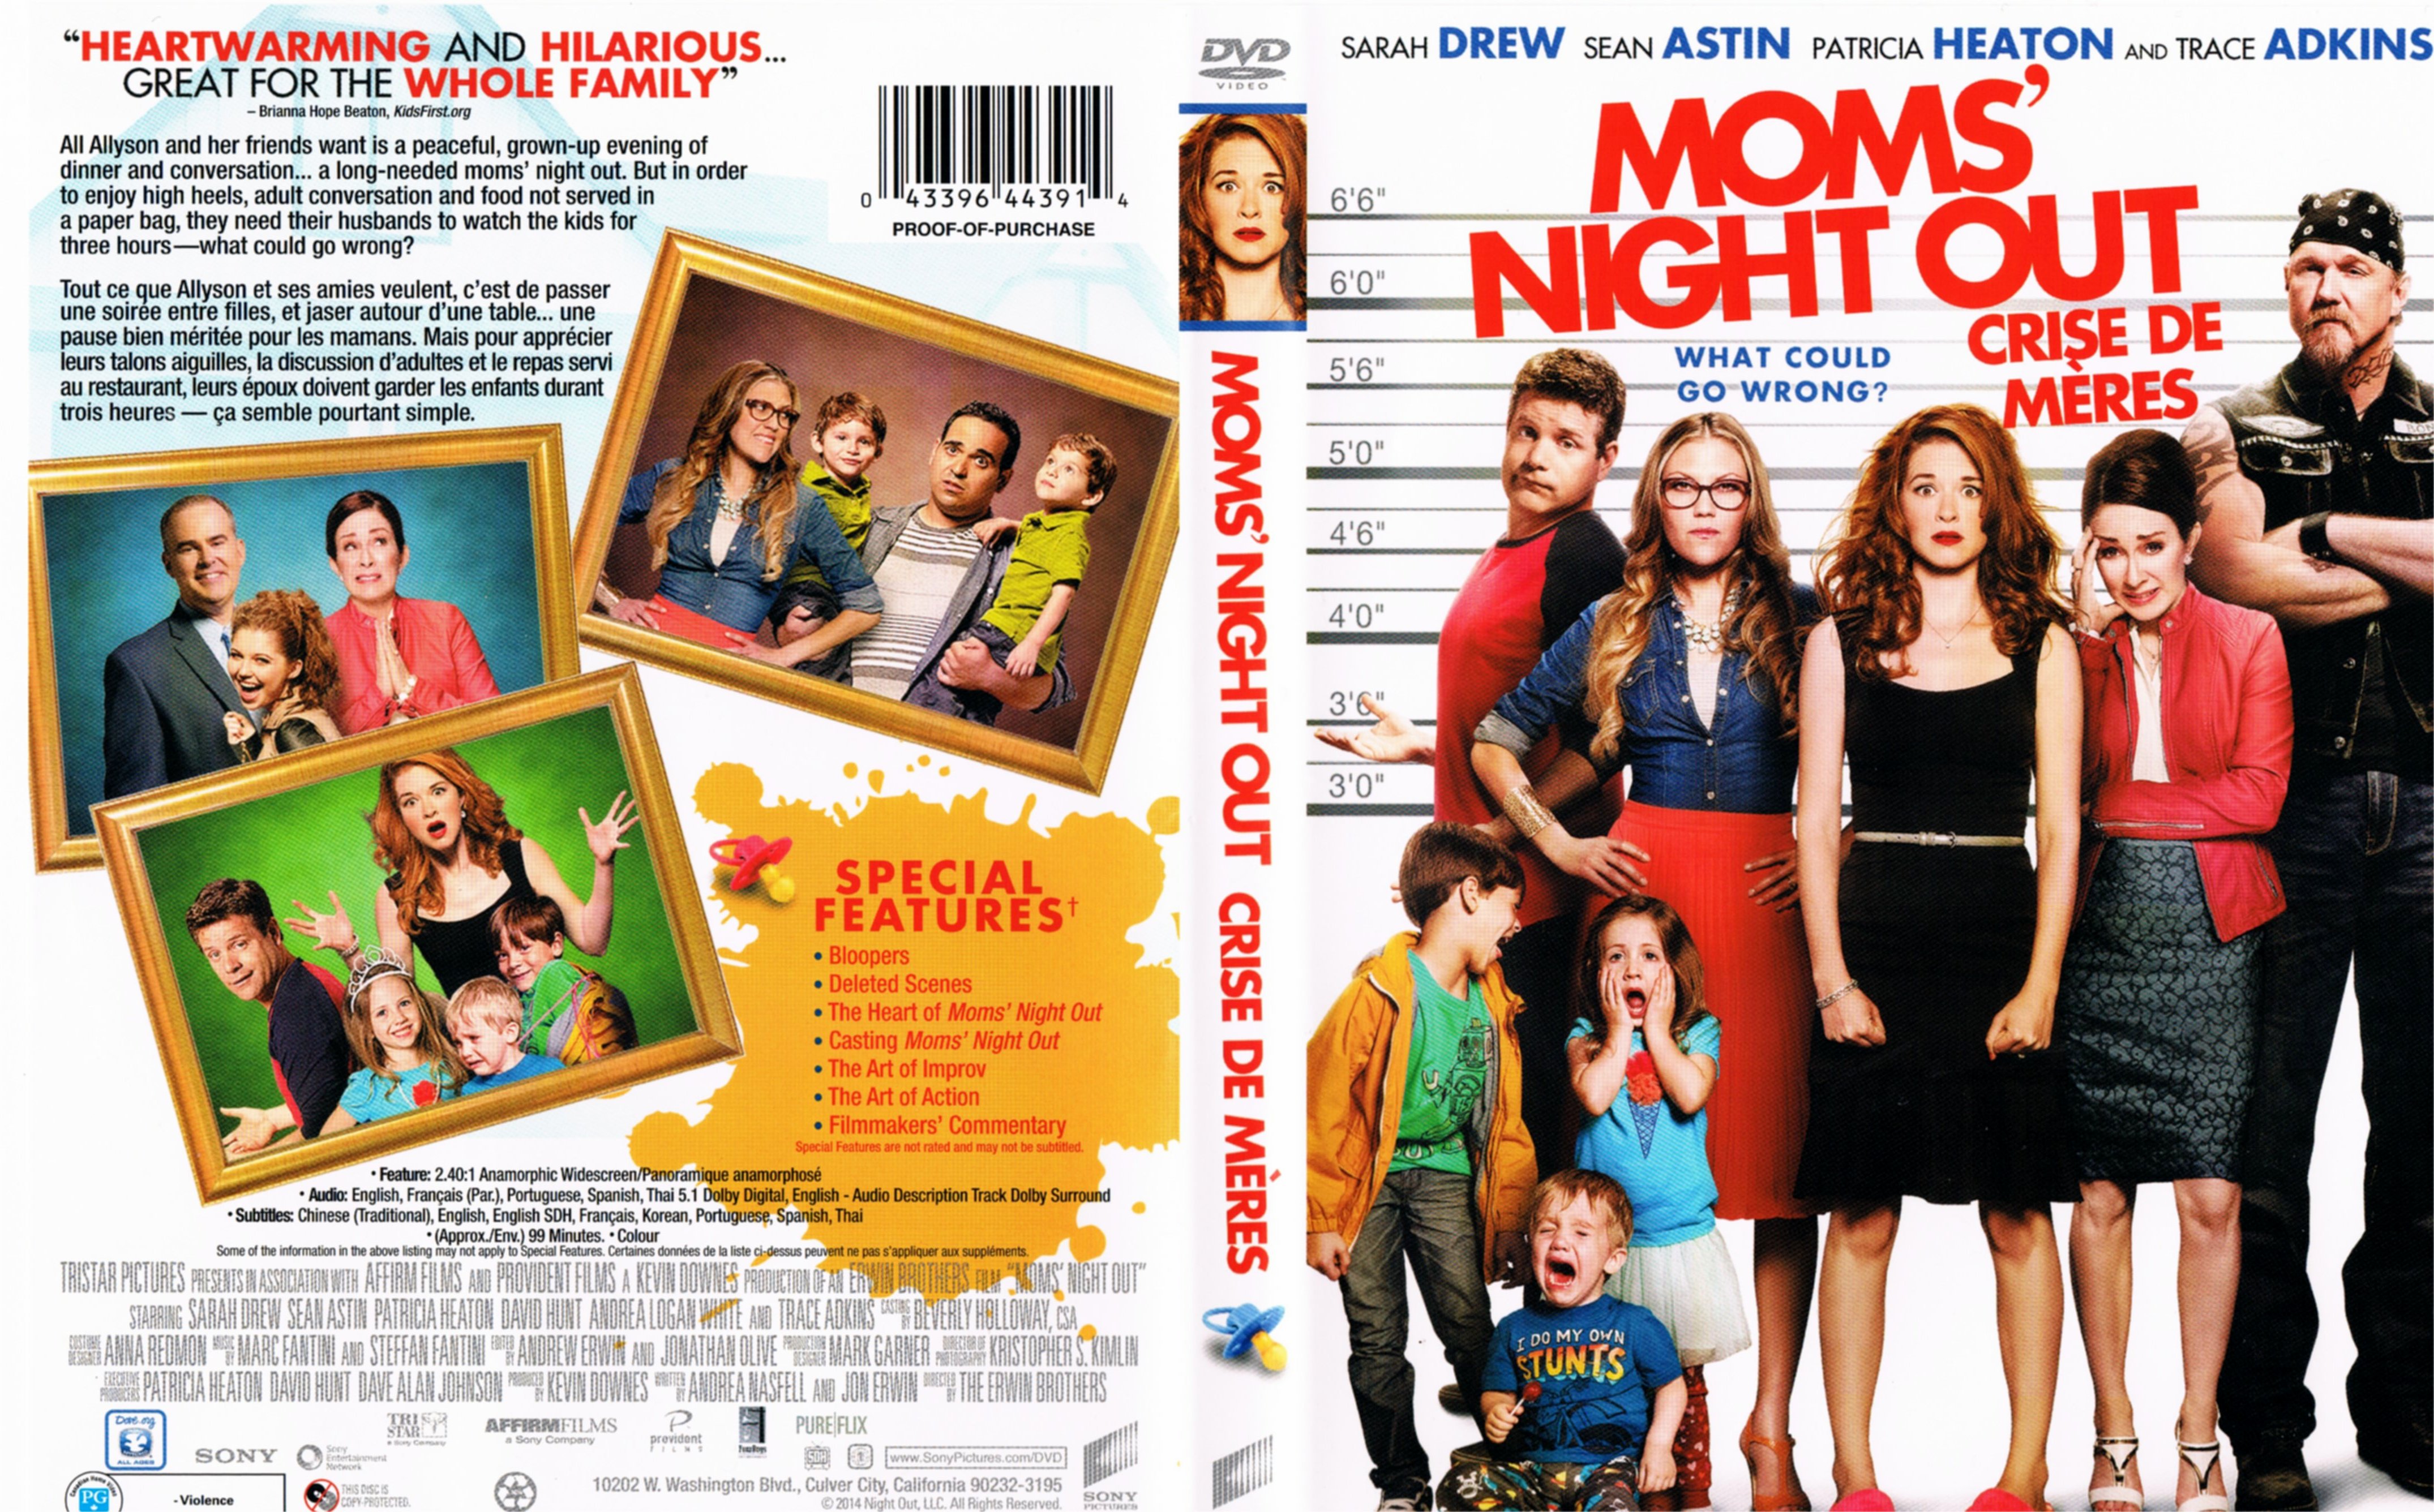 Jaquette DVD Crise de mre - Mom